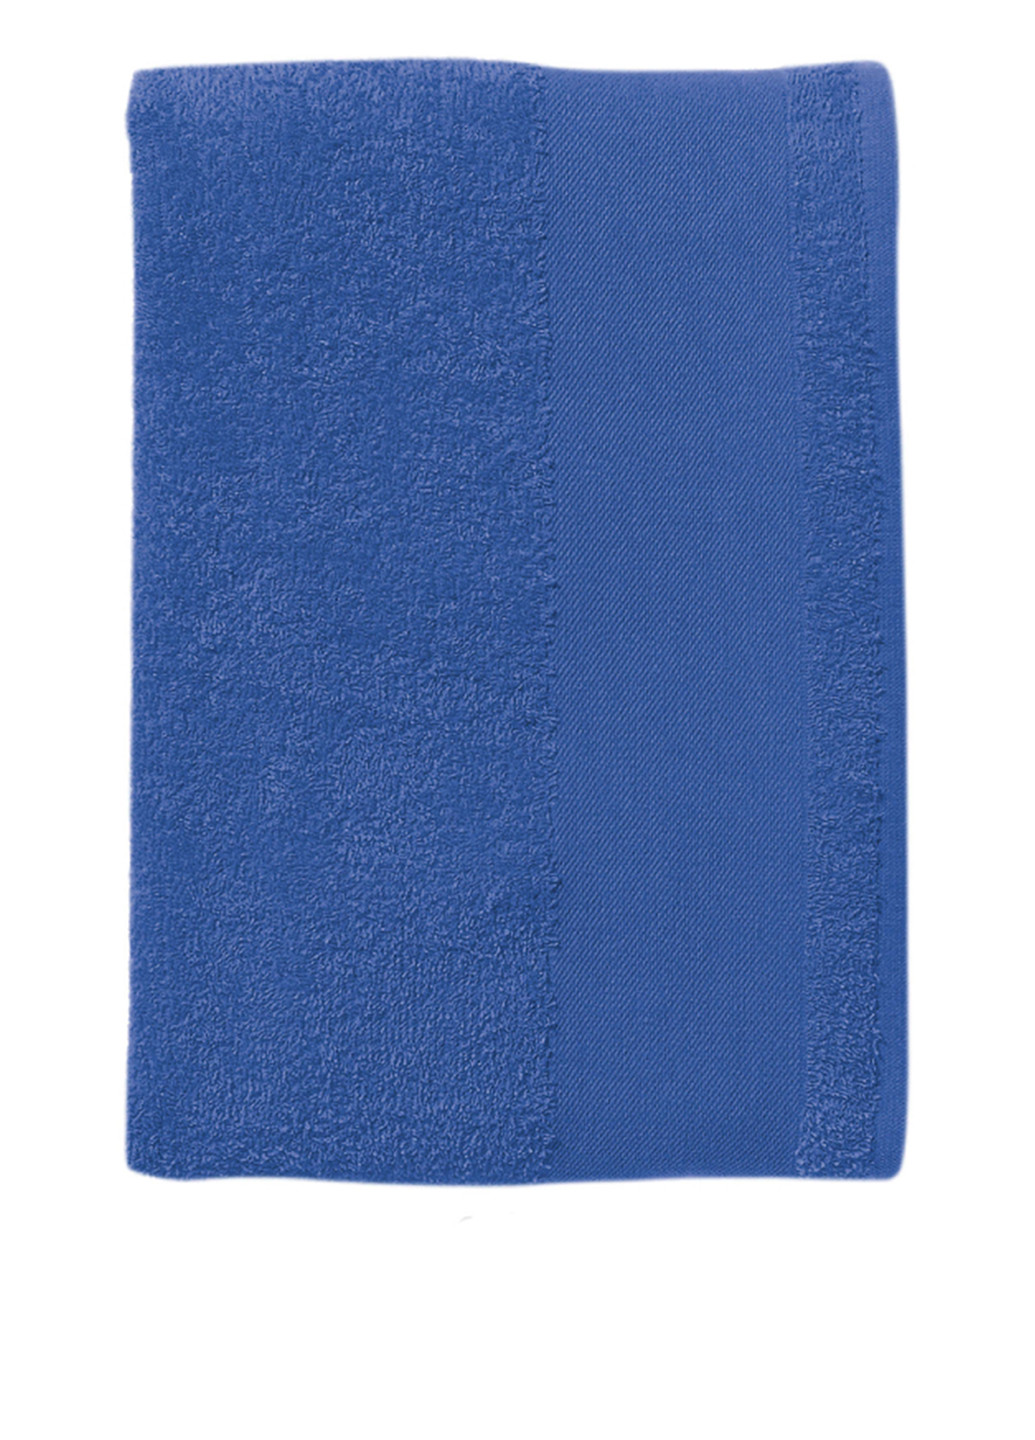 Sol's полотенце, 100x150 см однотонный синий производство - Франция